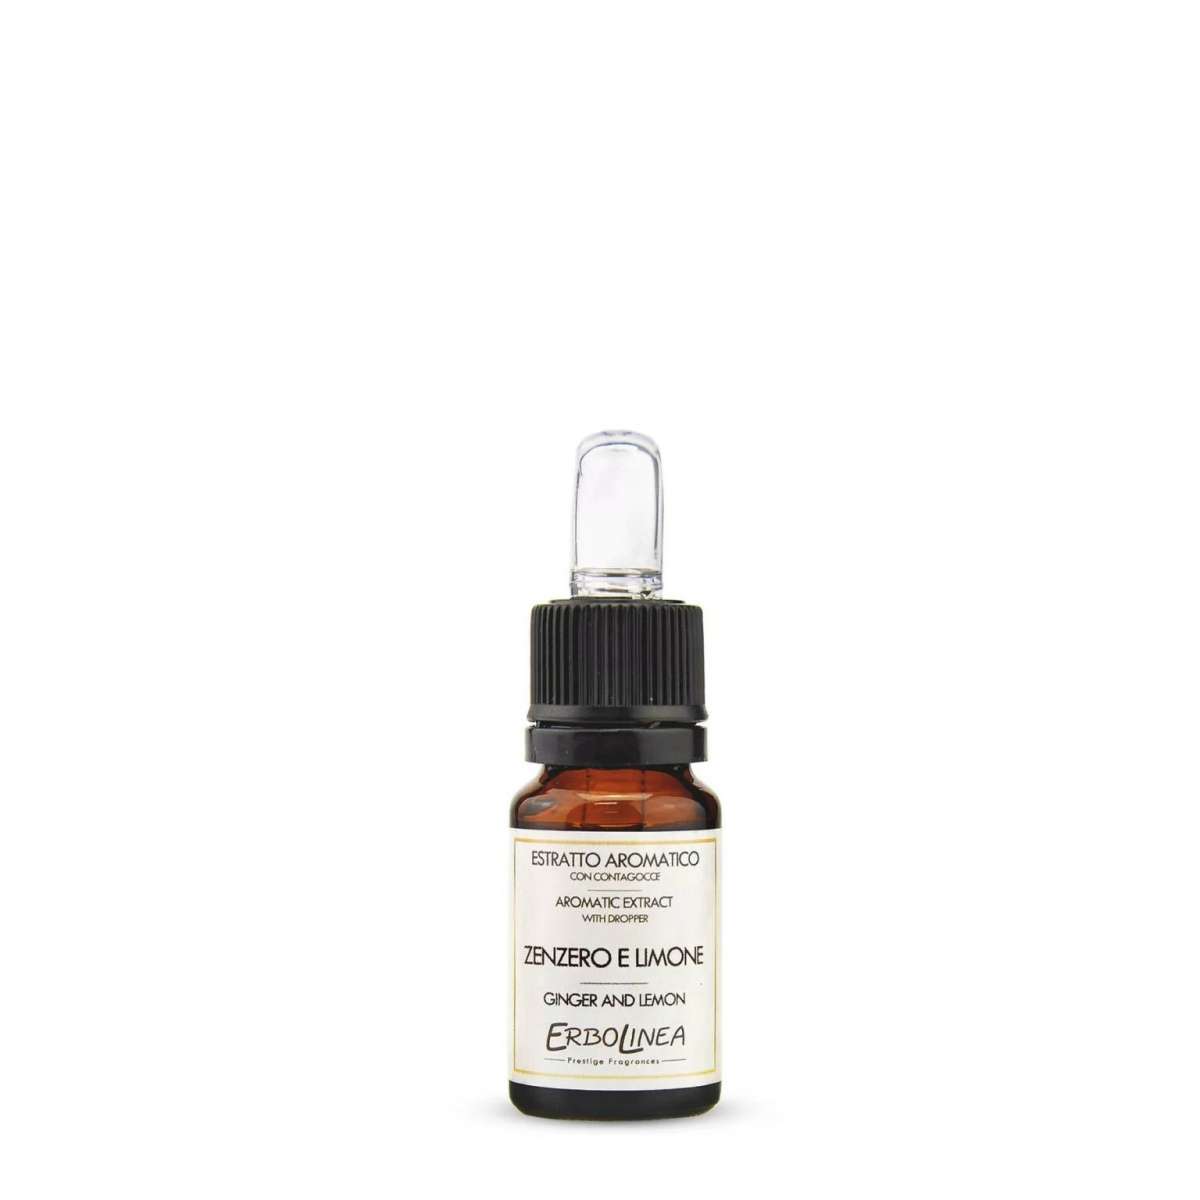 Immagine del prodotto Estratto Aromatico con Contagocce Zenzero e Limone 10 ml | Erbolinea